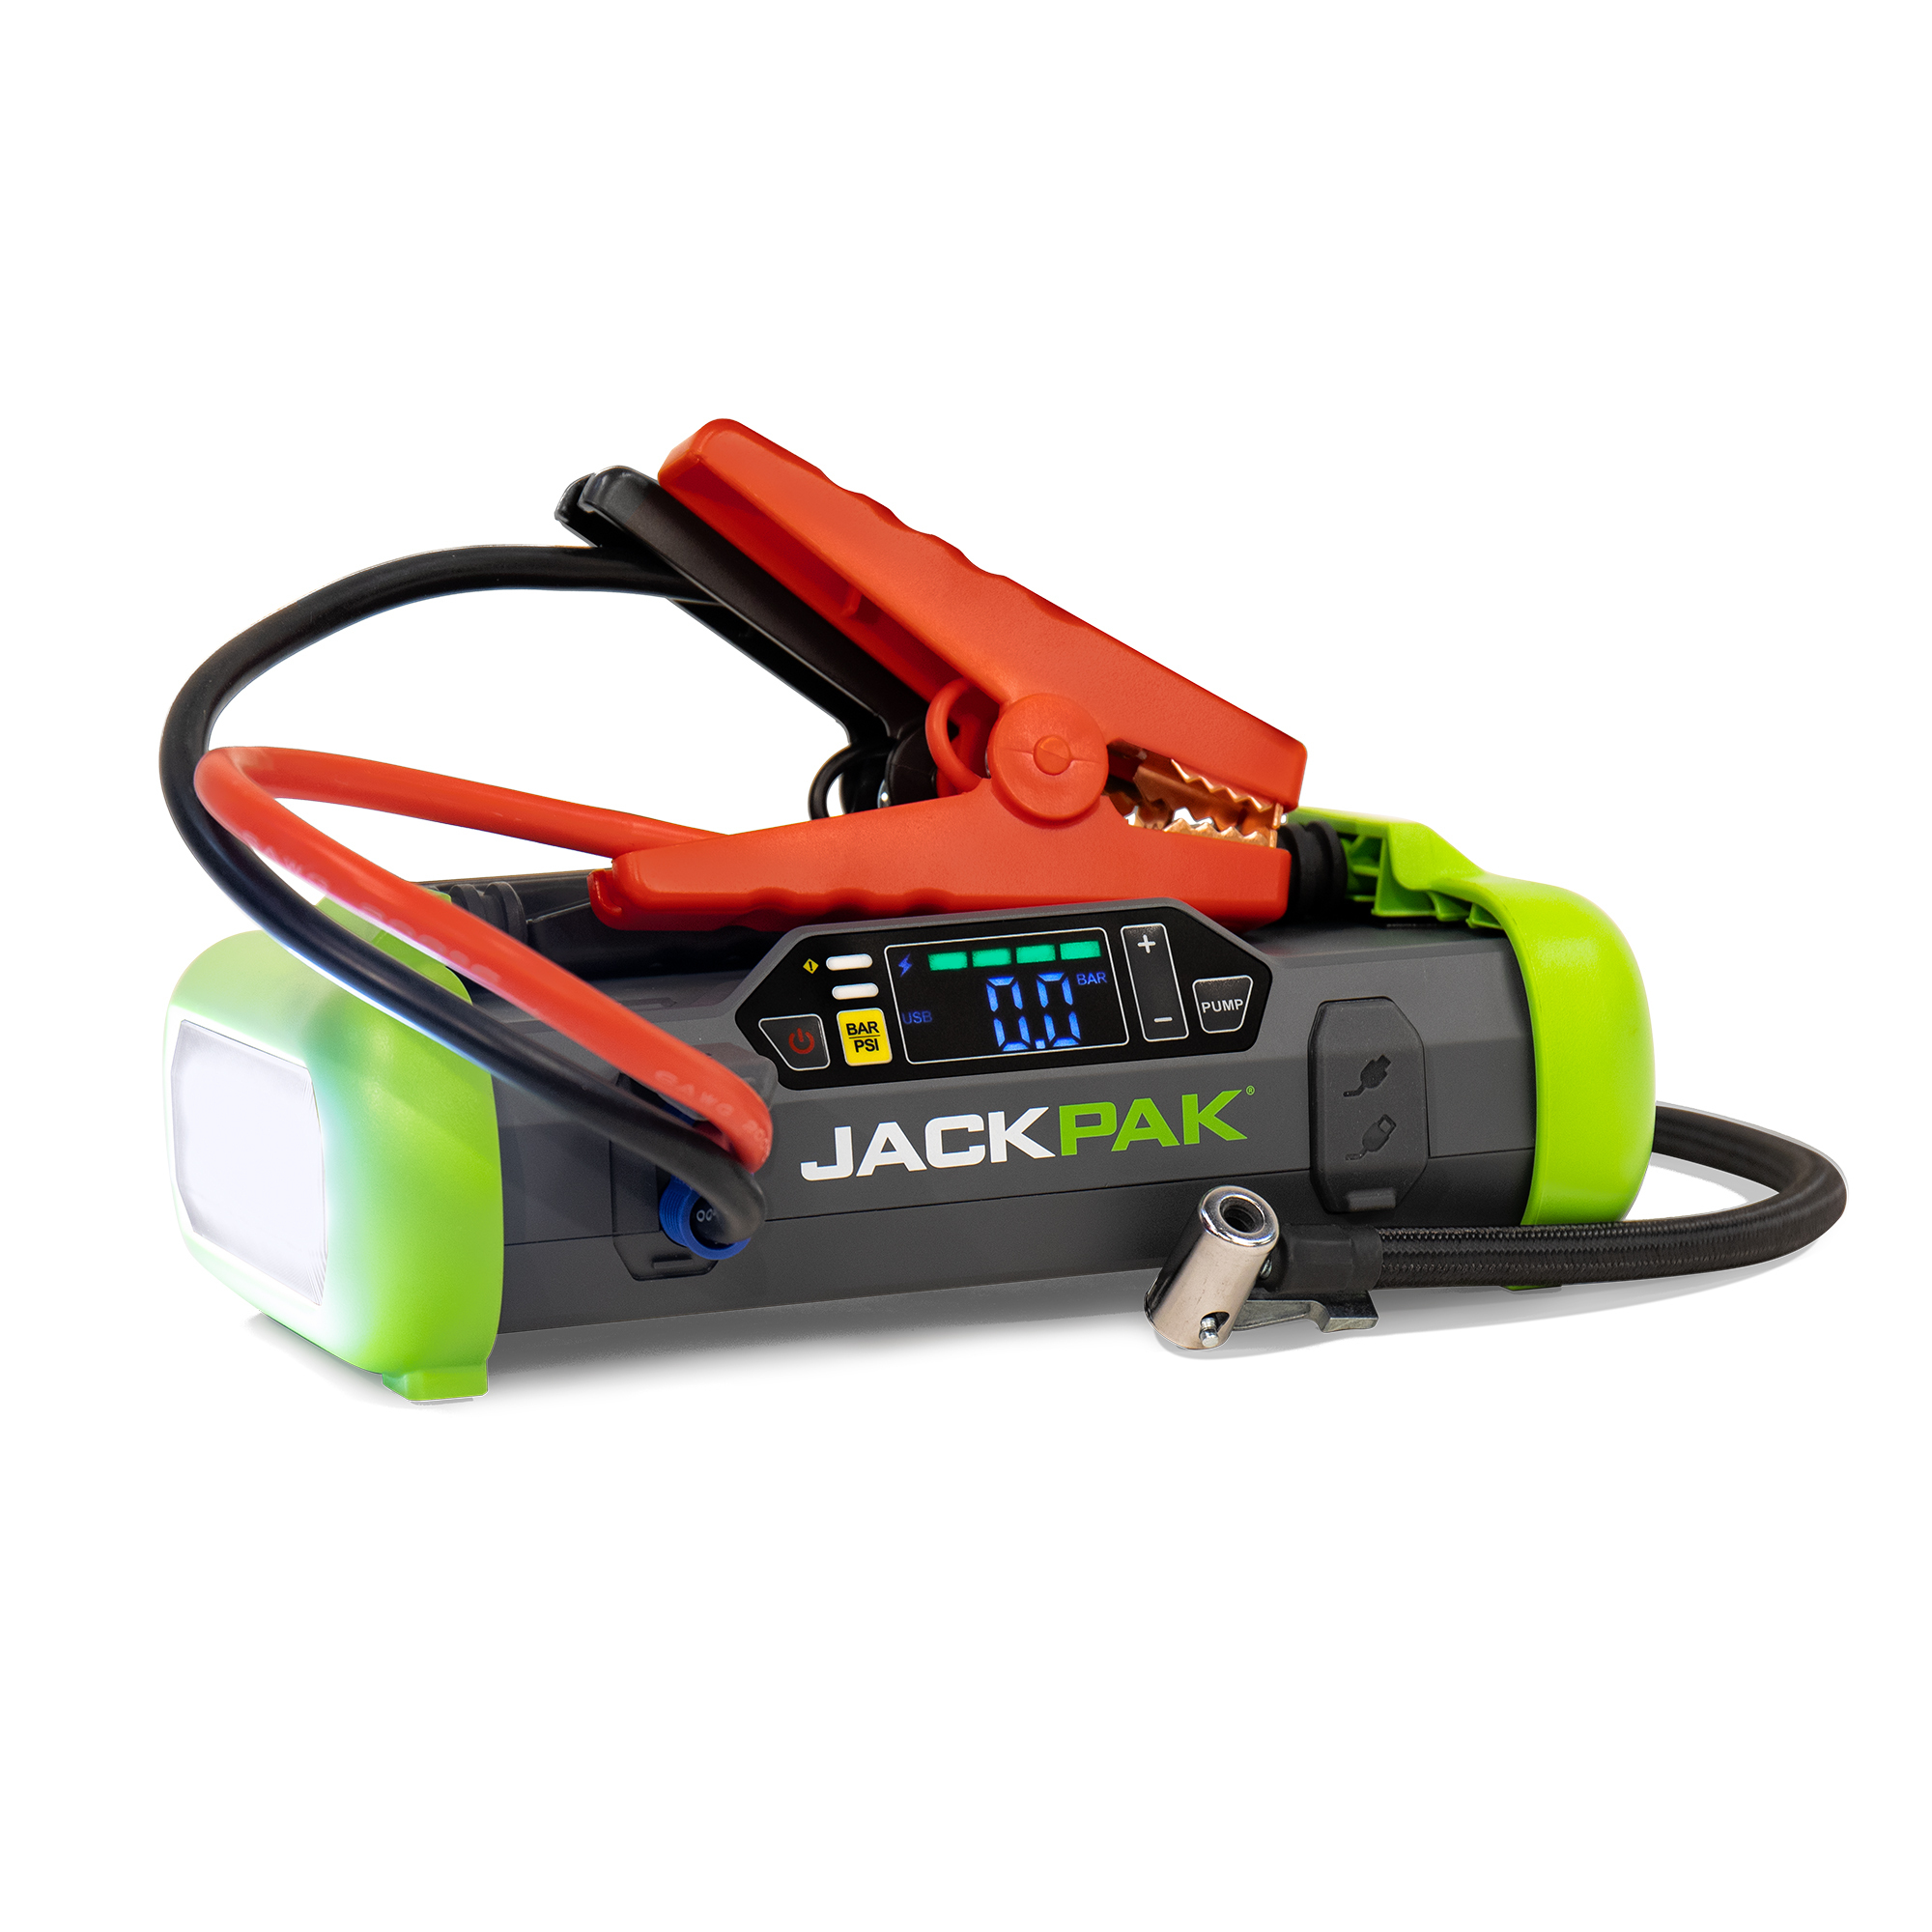 JackPak 4 in 1 Emergency Roadside Tool, 2500 Amps, 12 Volts, Model 5180050